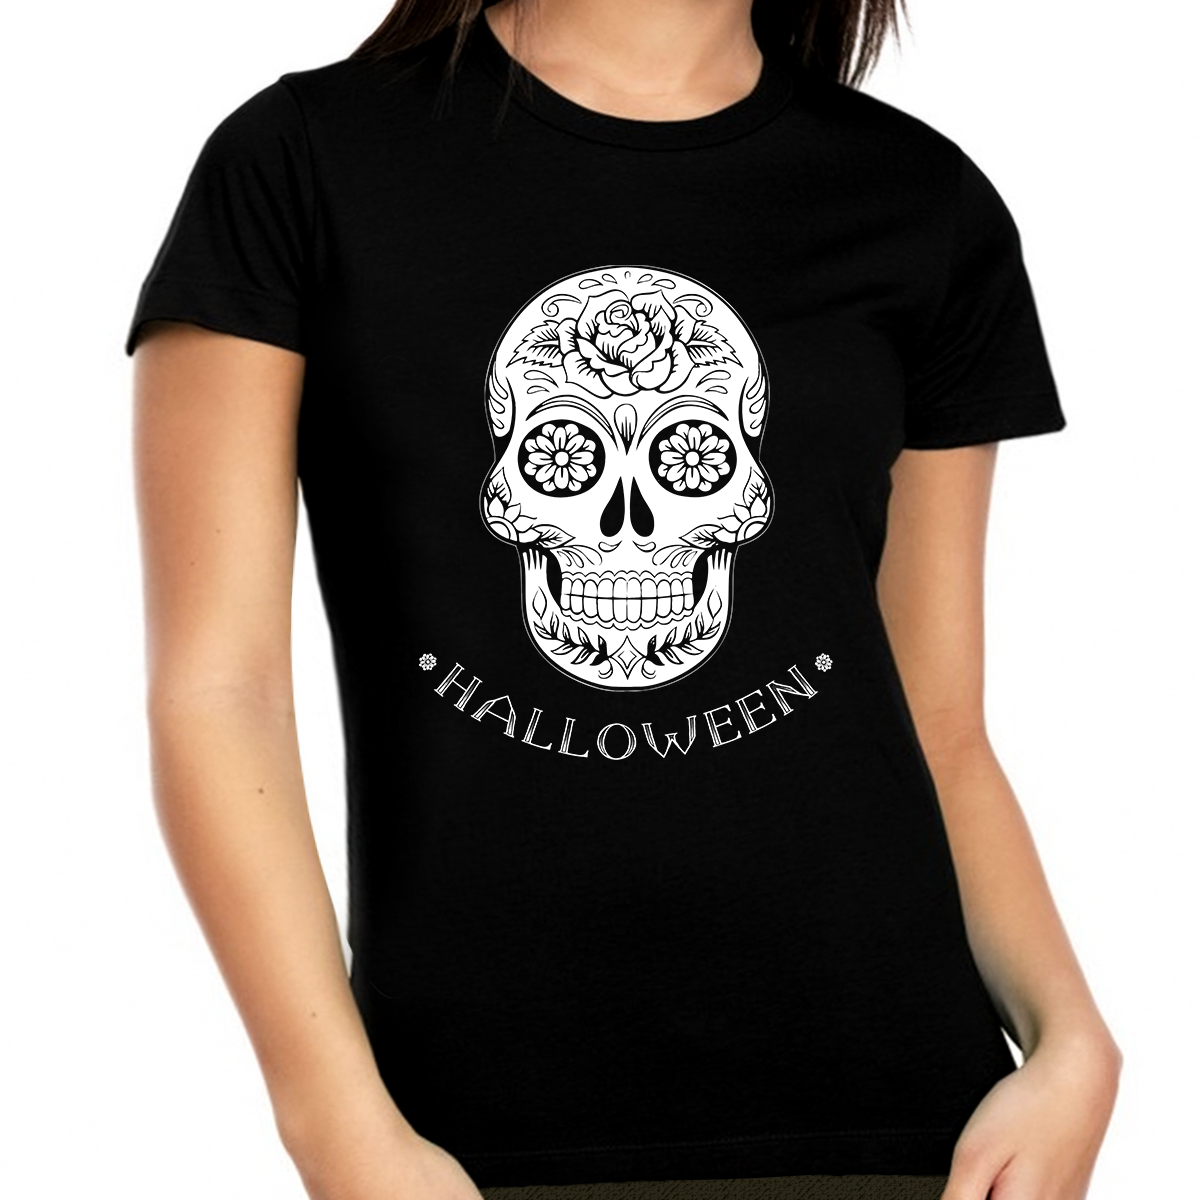 Halloween Shirts for Women Plus Size 1X 2X 3X 4X 5X Skeleton Shirt Cute Halloween Shirts for Women